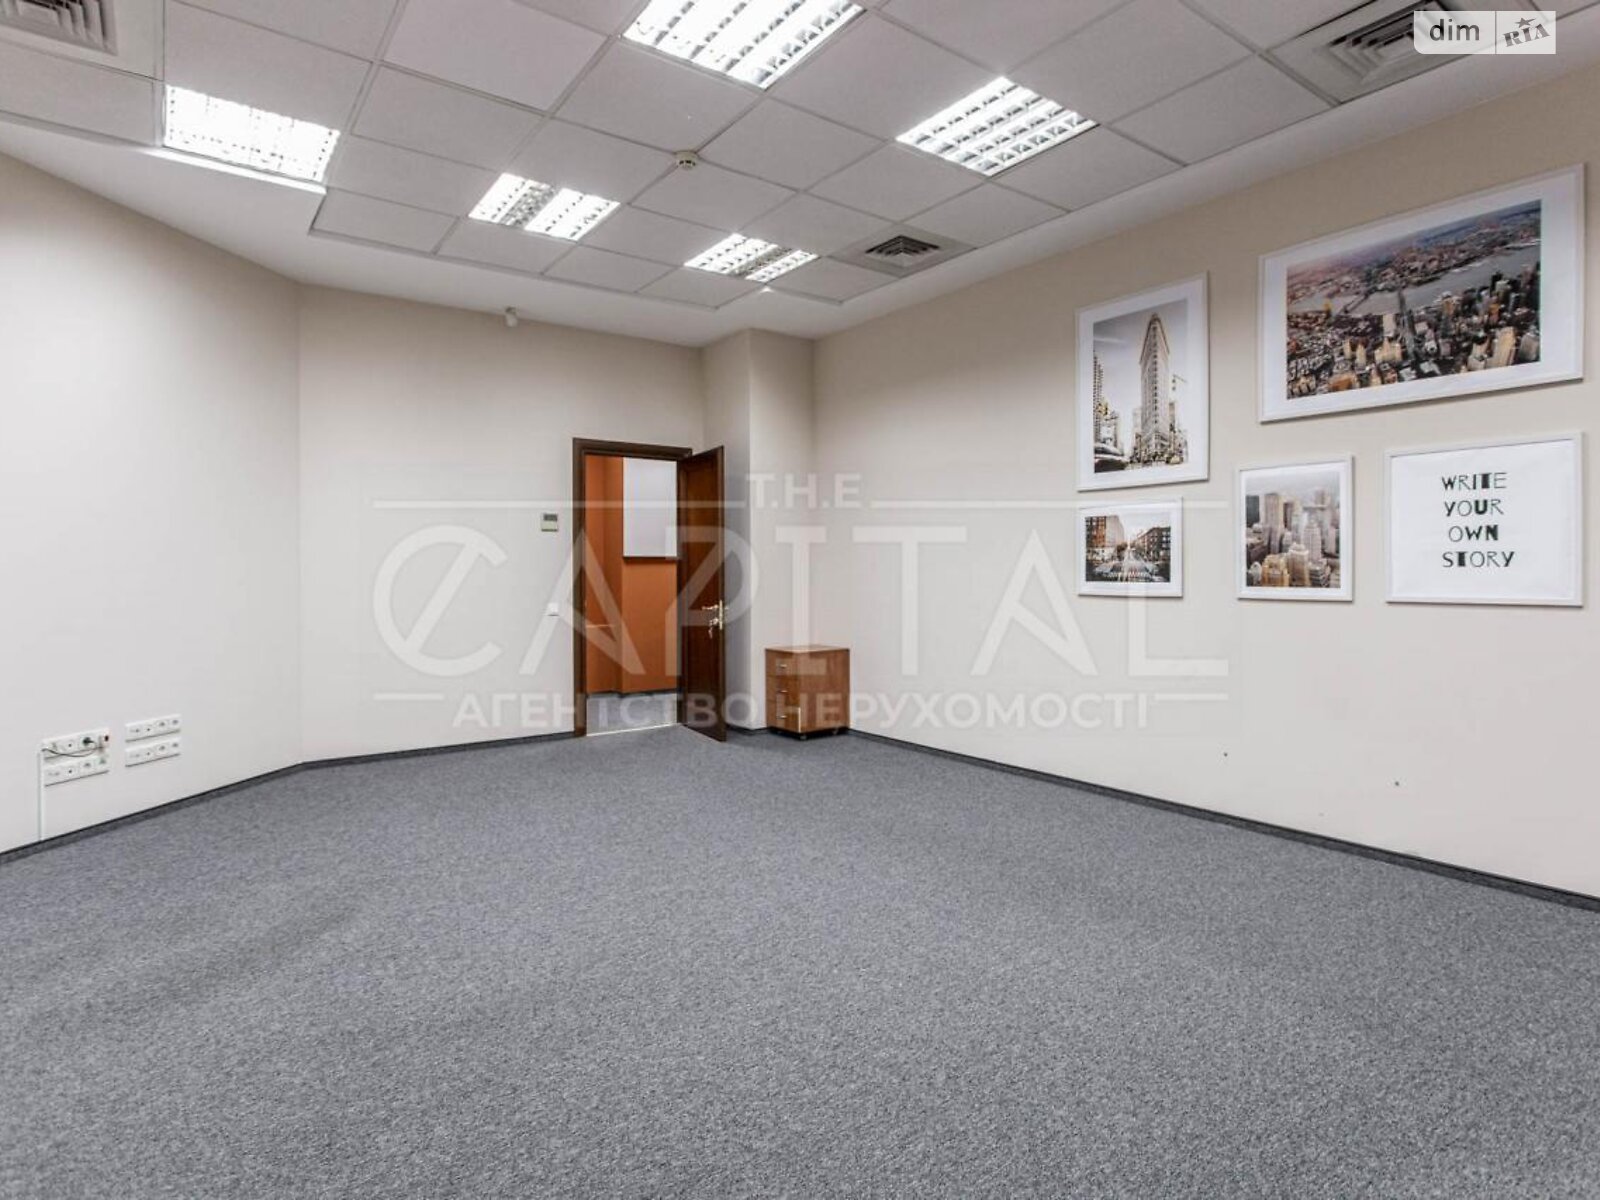 Аренда офисного помещения в Киеве, Старонаводницкая улица 13, помещений - 5, этаж - 2 фото 1